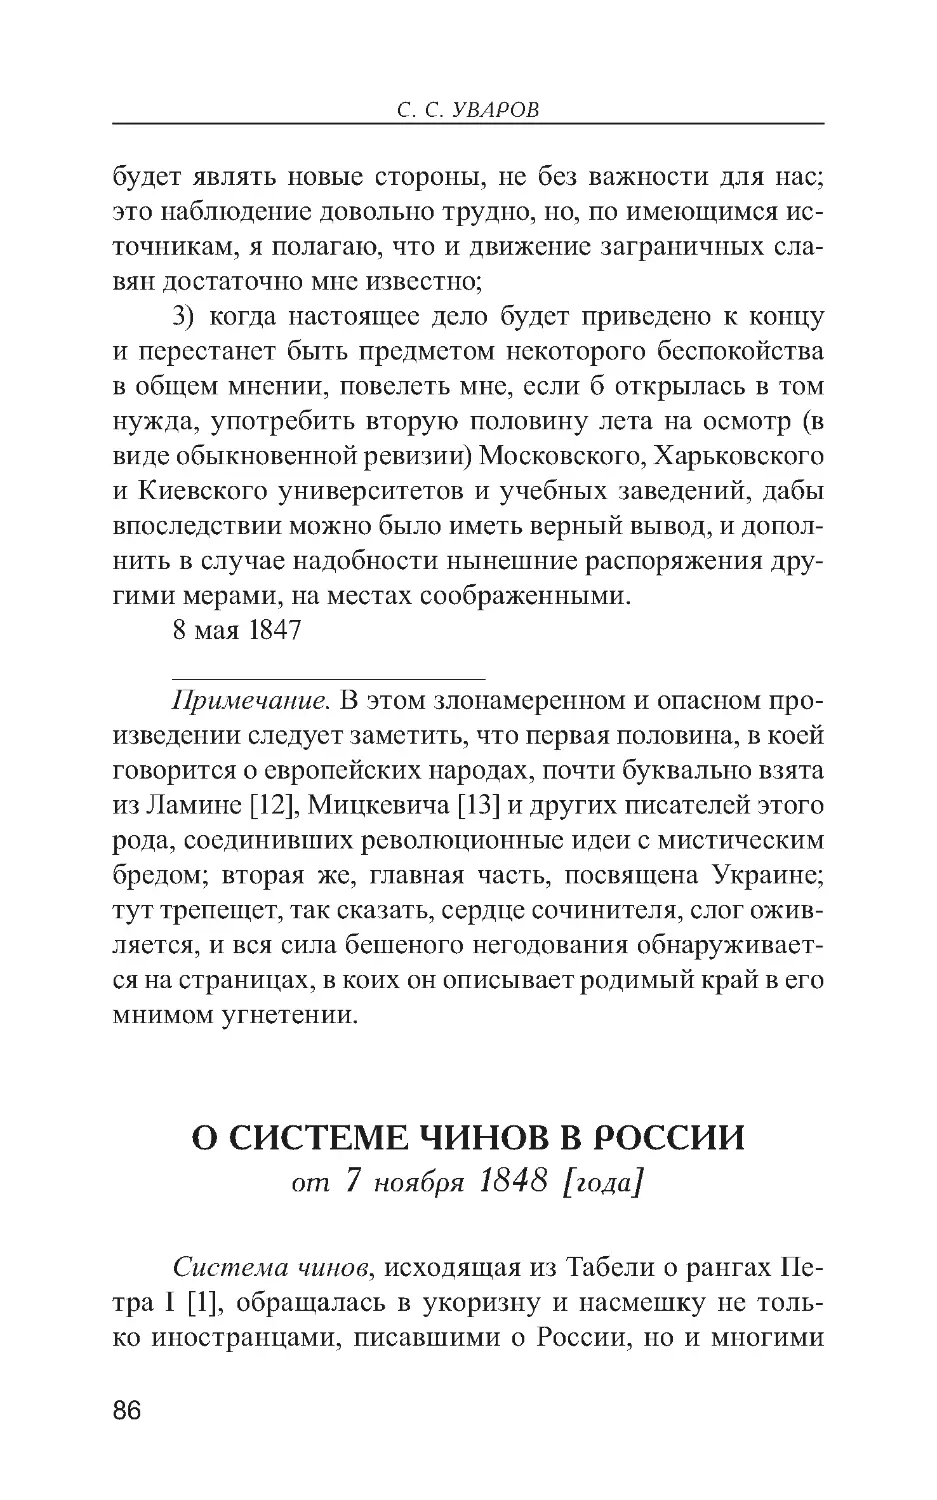 О системе чинов в России от 7 ноября 1848 [года]